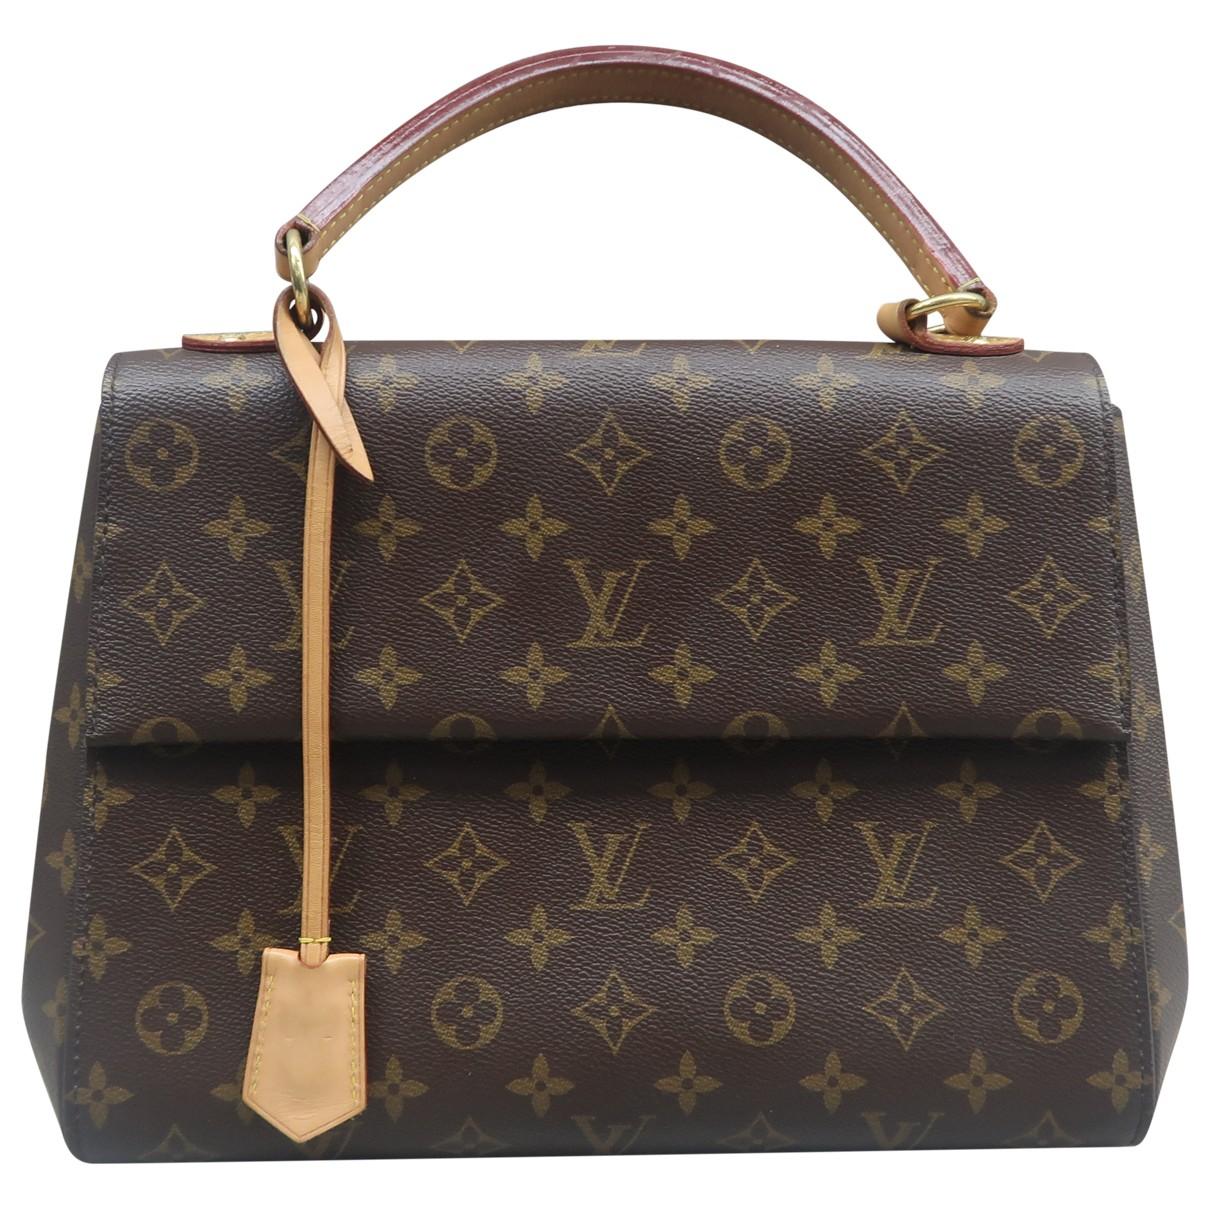 Cluny Louis Vuitton Handbags for Women - Vestiaire Collective